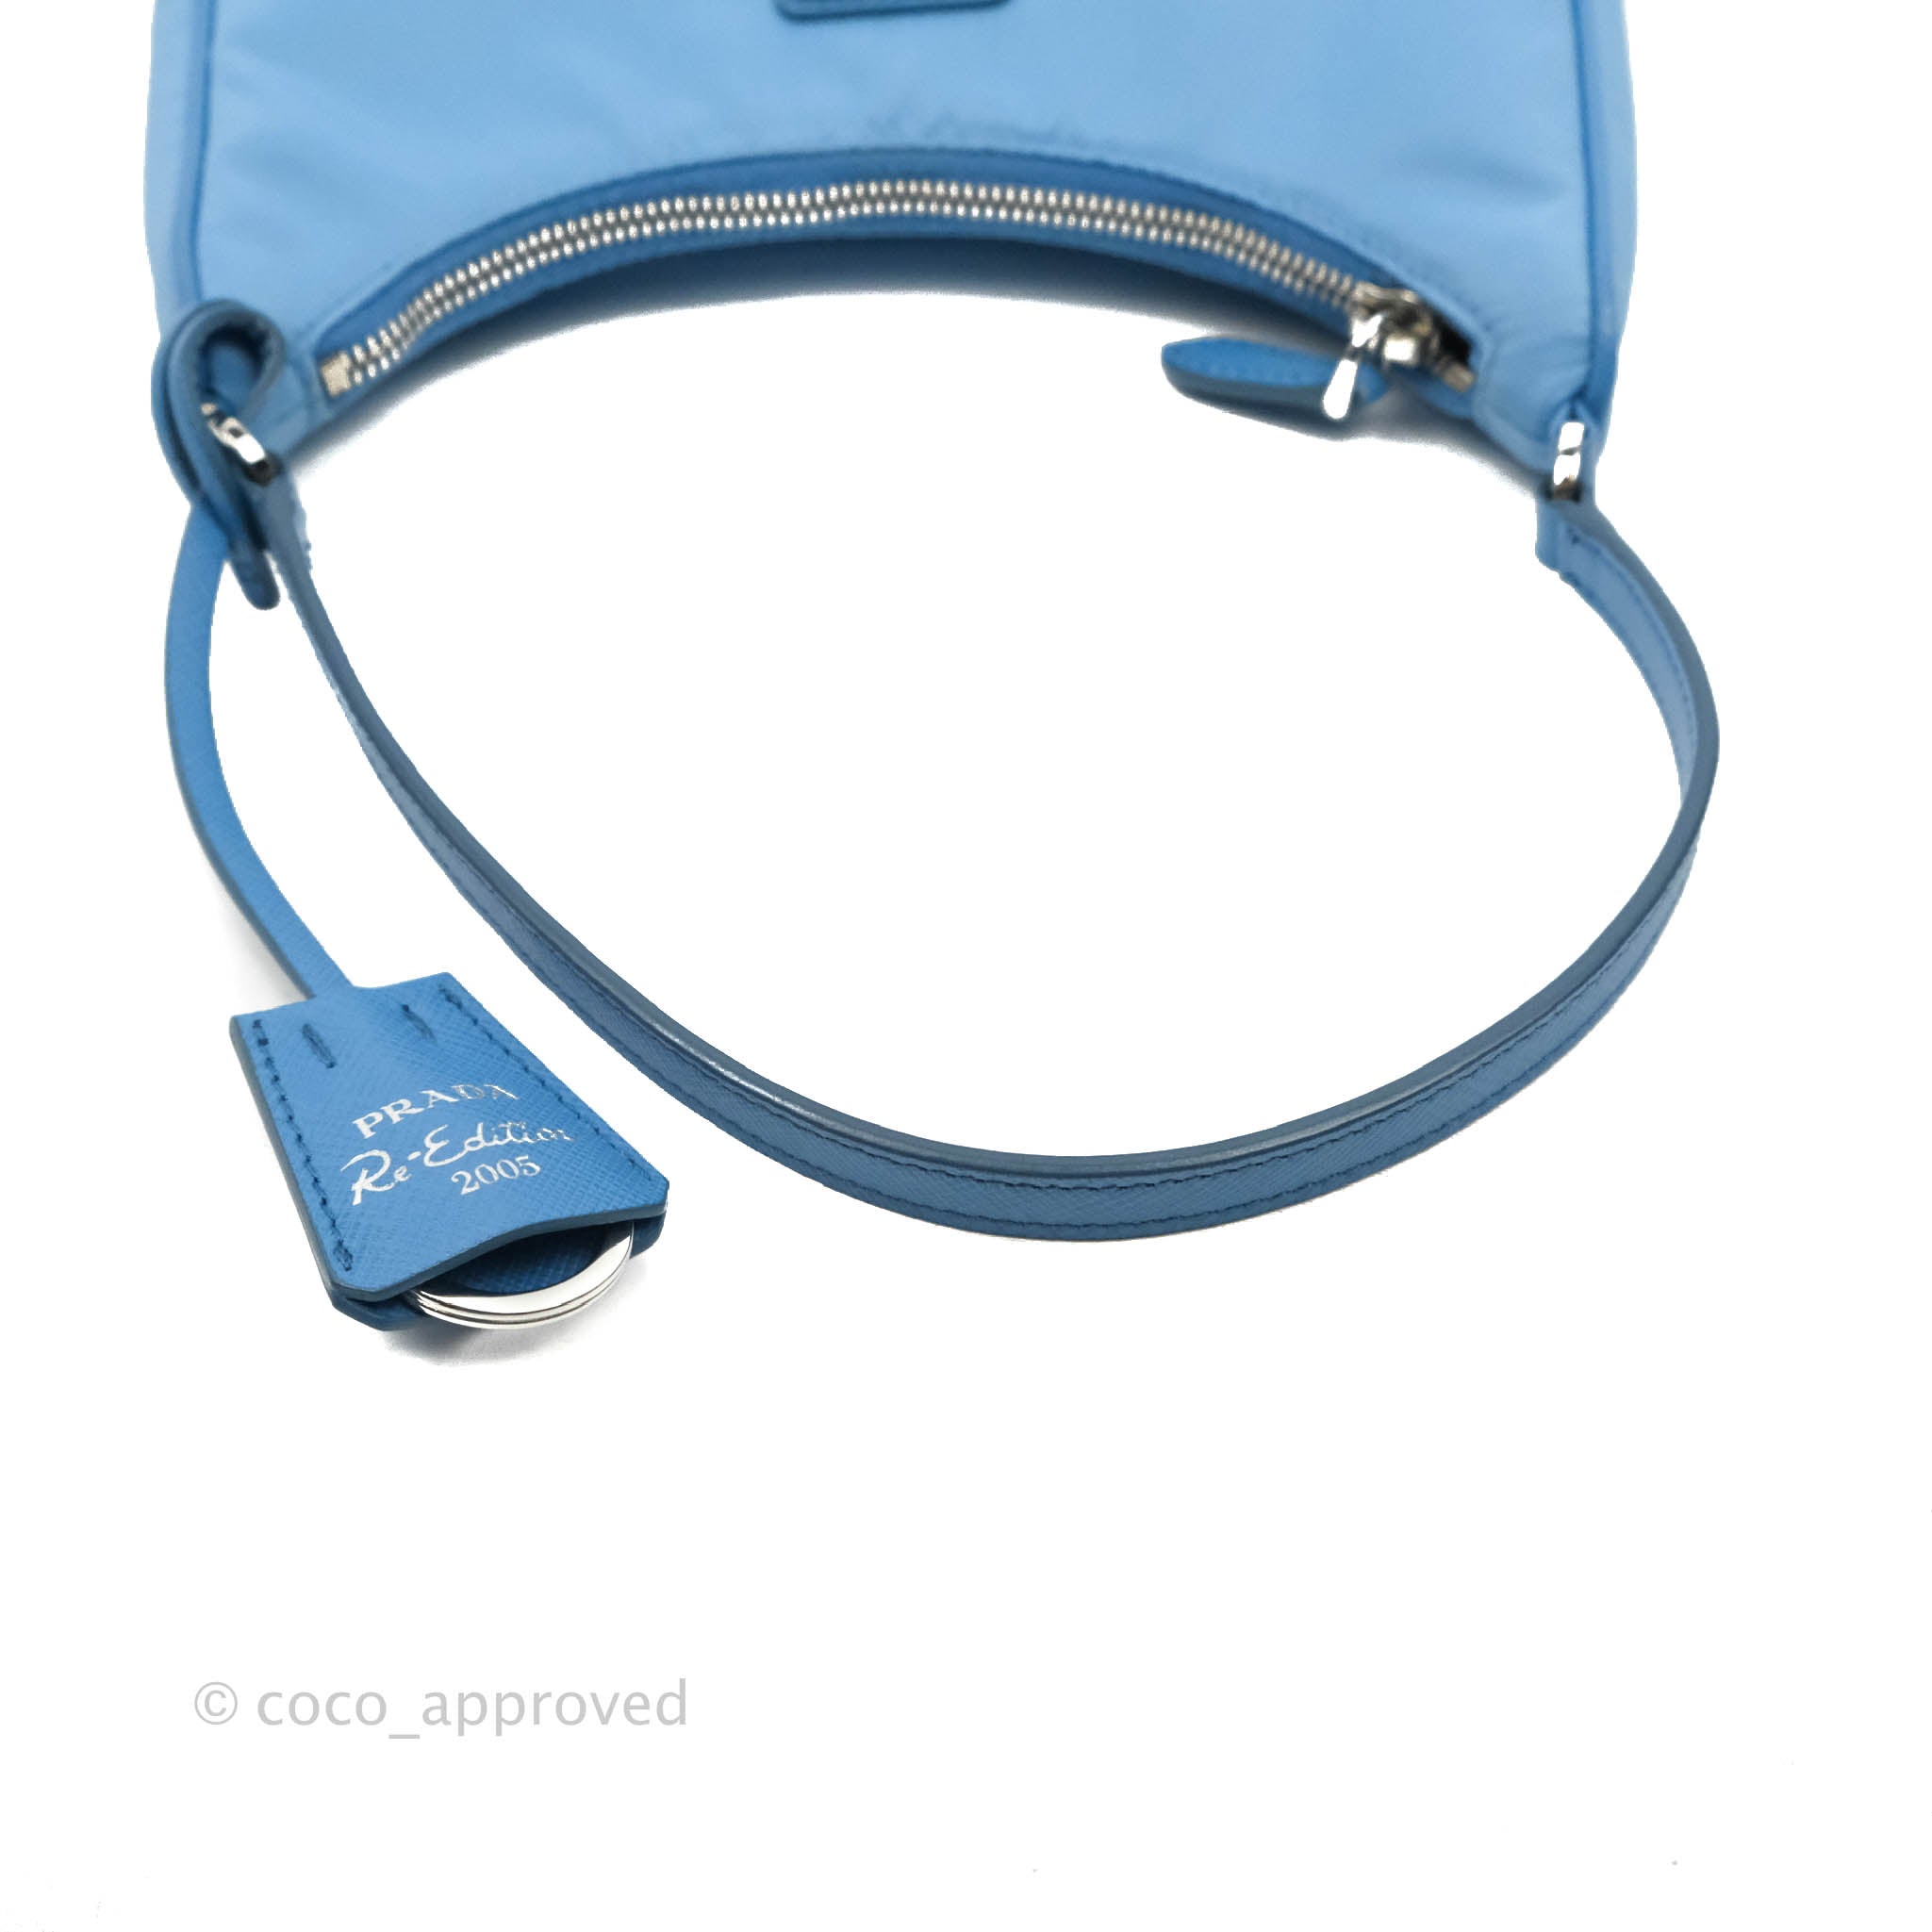 Light Blue Prada Re-edition 2005 Re-nylon Bag